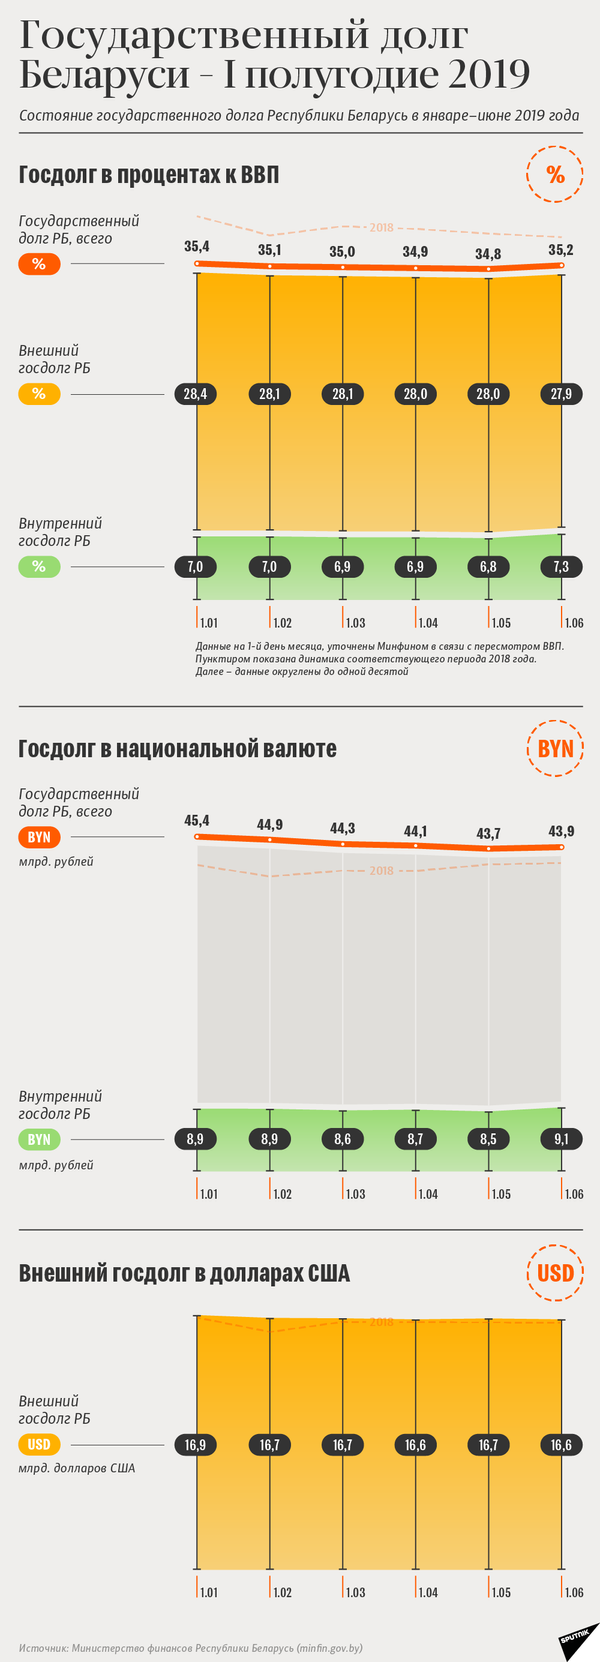 Госдолг Беларуси в первом полугодии 2019 года | Инфографика sputnik.by - Sputnik Беларусь